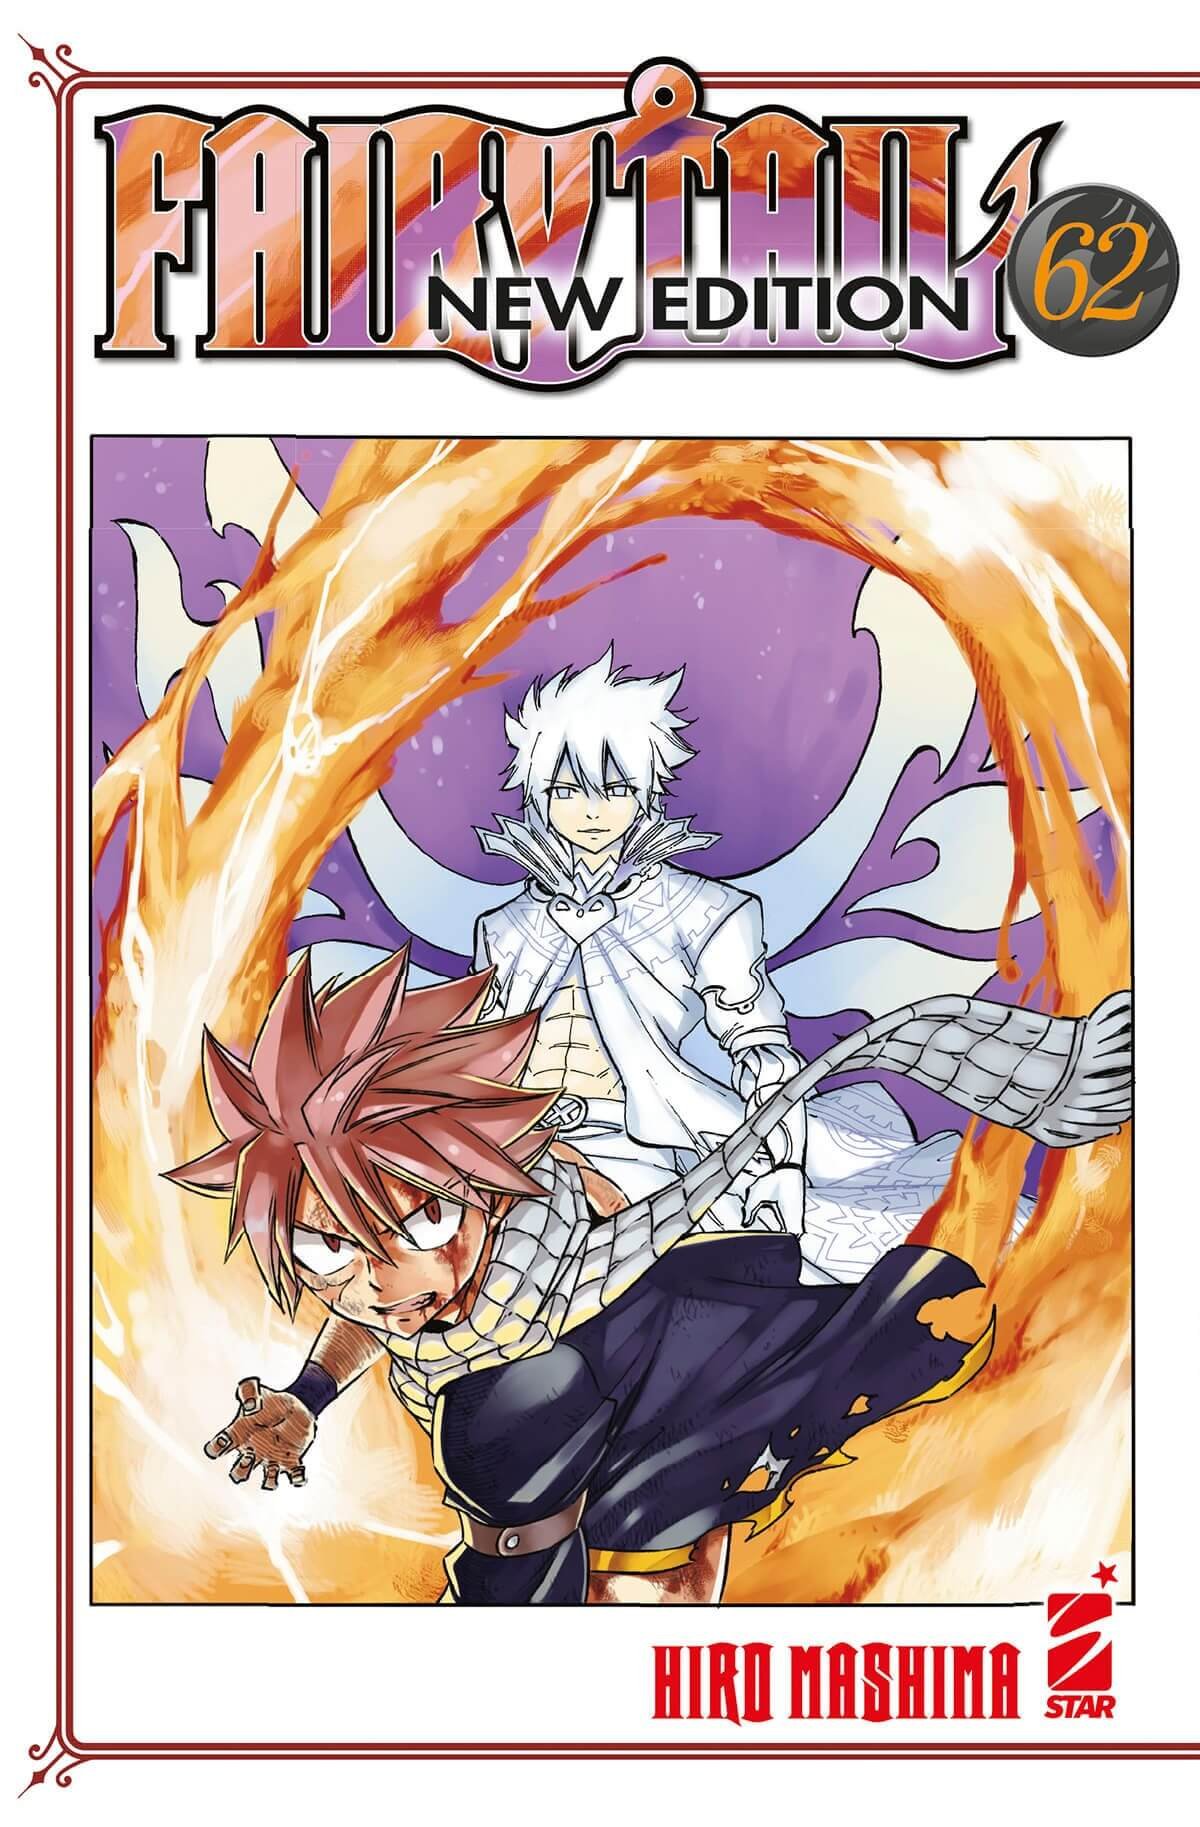 Fairy Tail New Edition 62, parmi les sorties manga de Star Comics du 8 février 2023